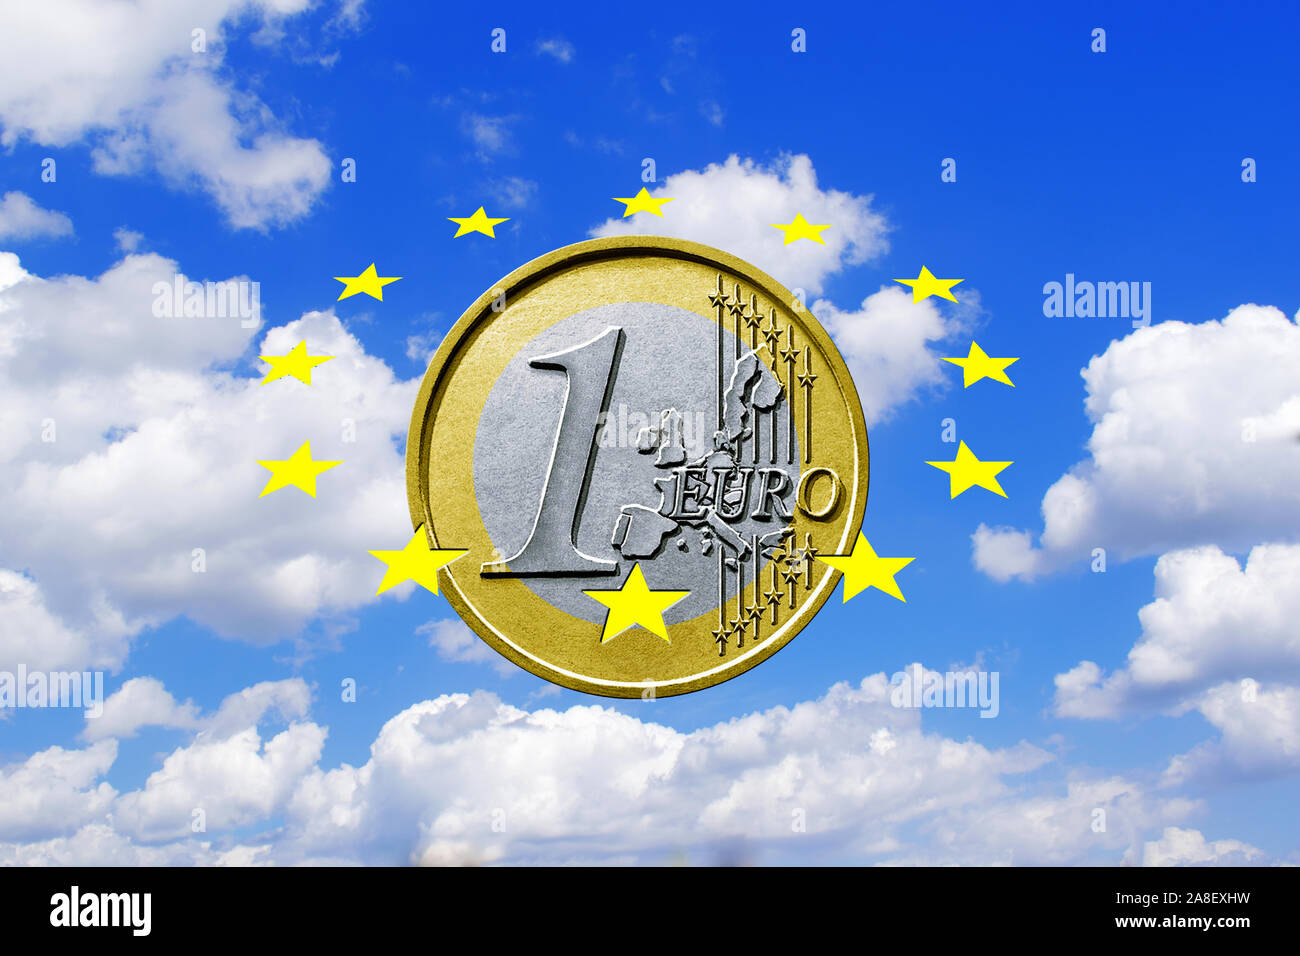 Euro, Sterne, Wolkenhimmel, Cumulus Wolken, Europäische Währung, 1 Euro, Münze Stock Photo